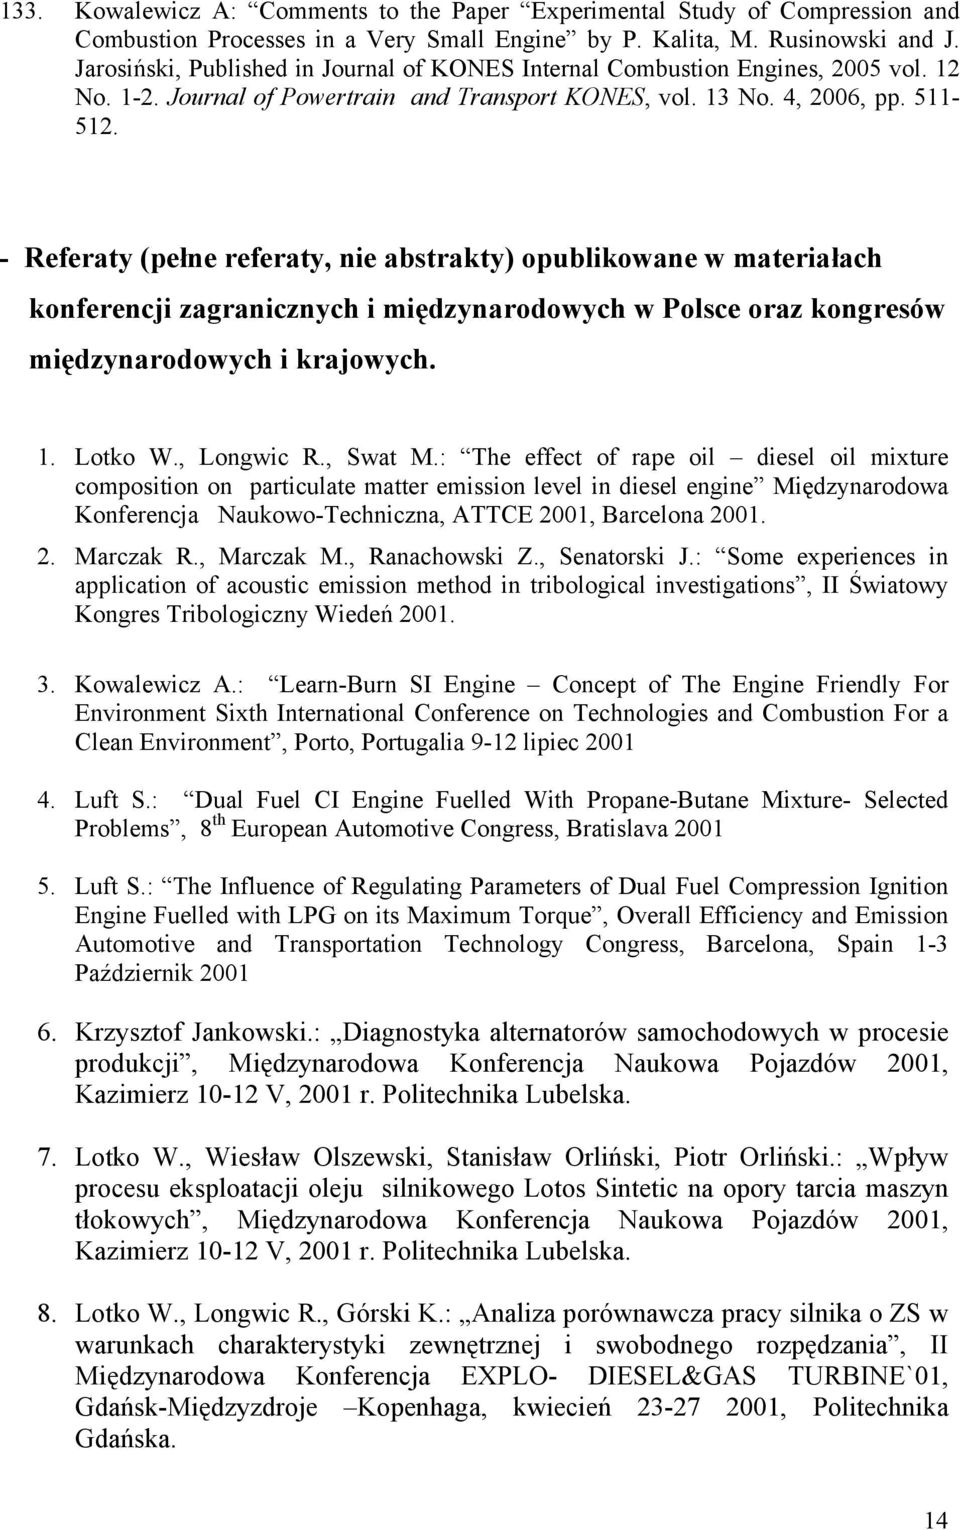 - Referaty (pełne referaty, nie abstrakty) opublikowane w materiałach konferencji zagranicznych i międzynarodowych w Polsce oraz kongresów międzynarodowych i krajowych. 1. Lotko W., Longwic R.